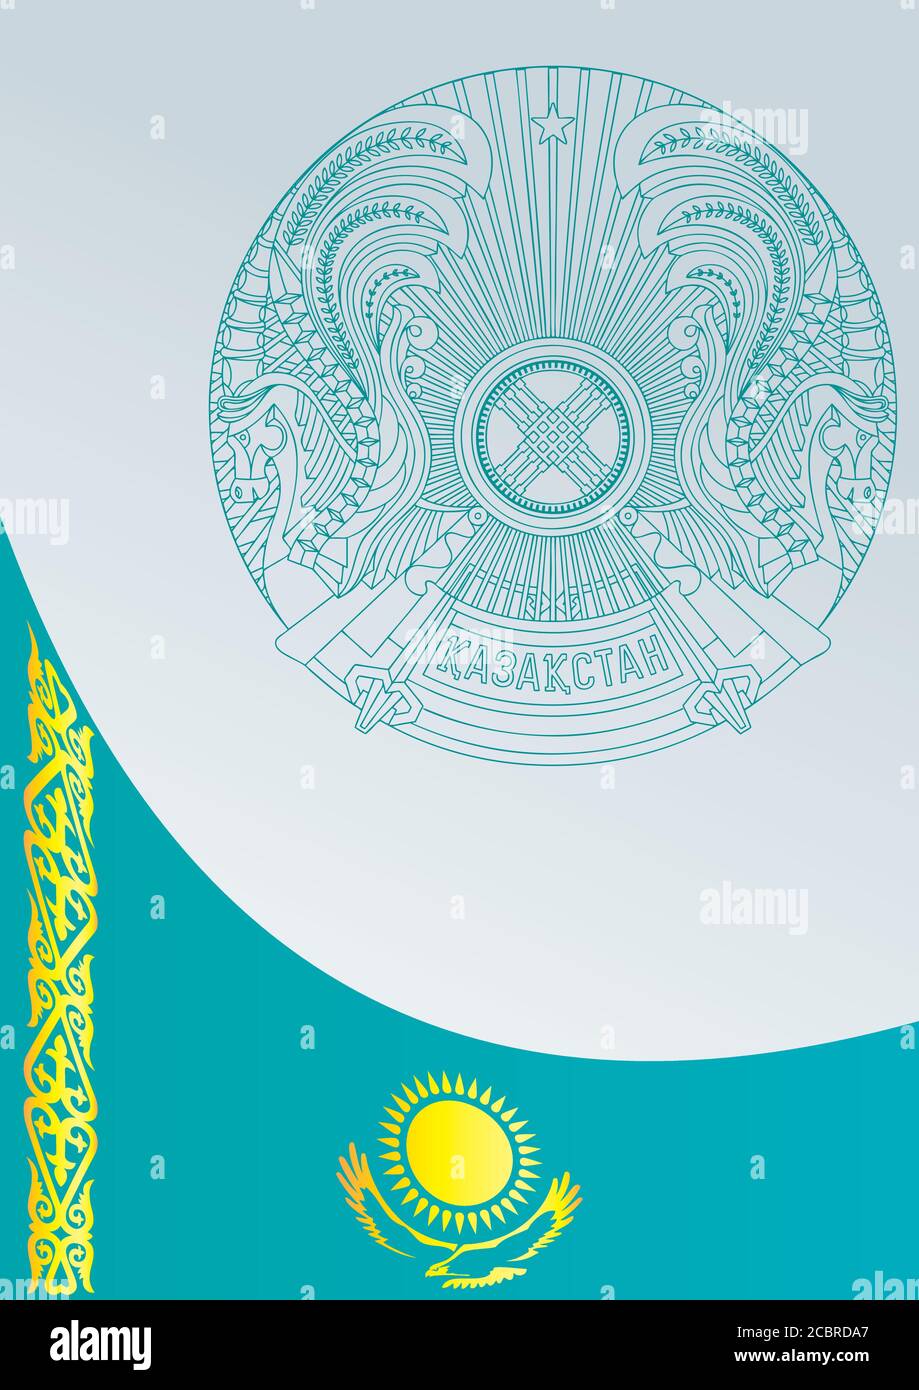 Казахстан символы вектор